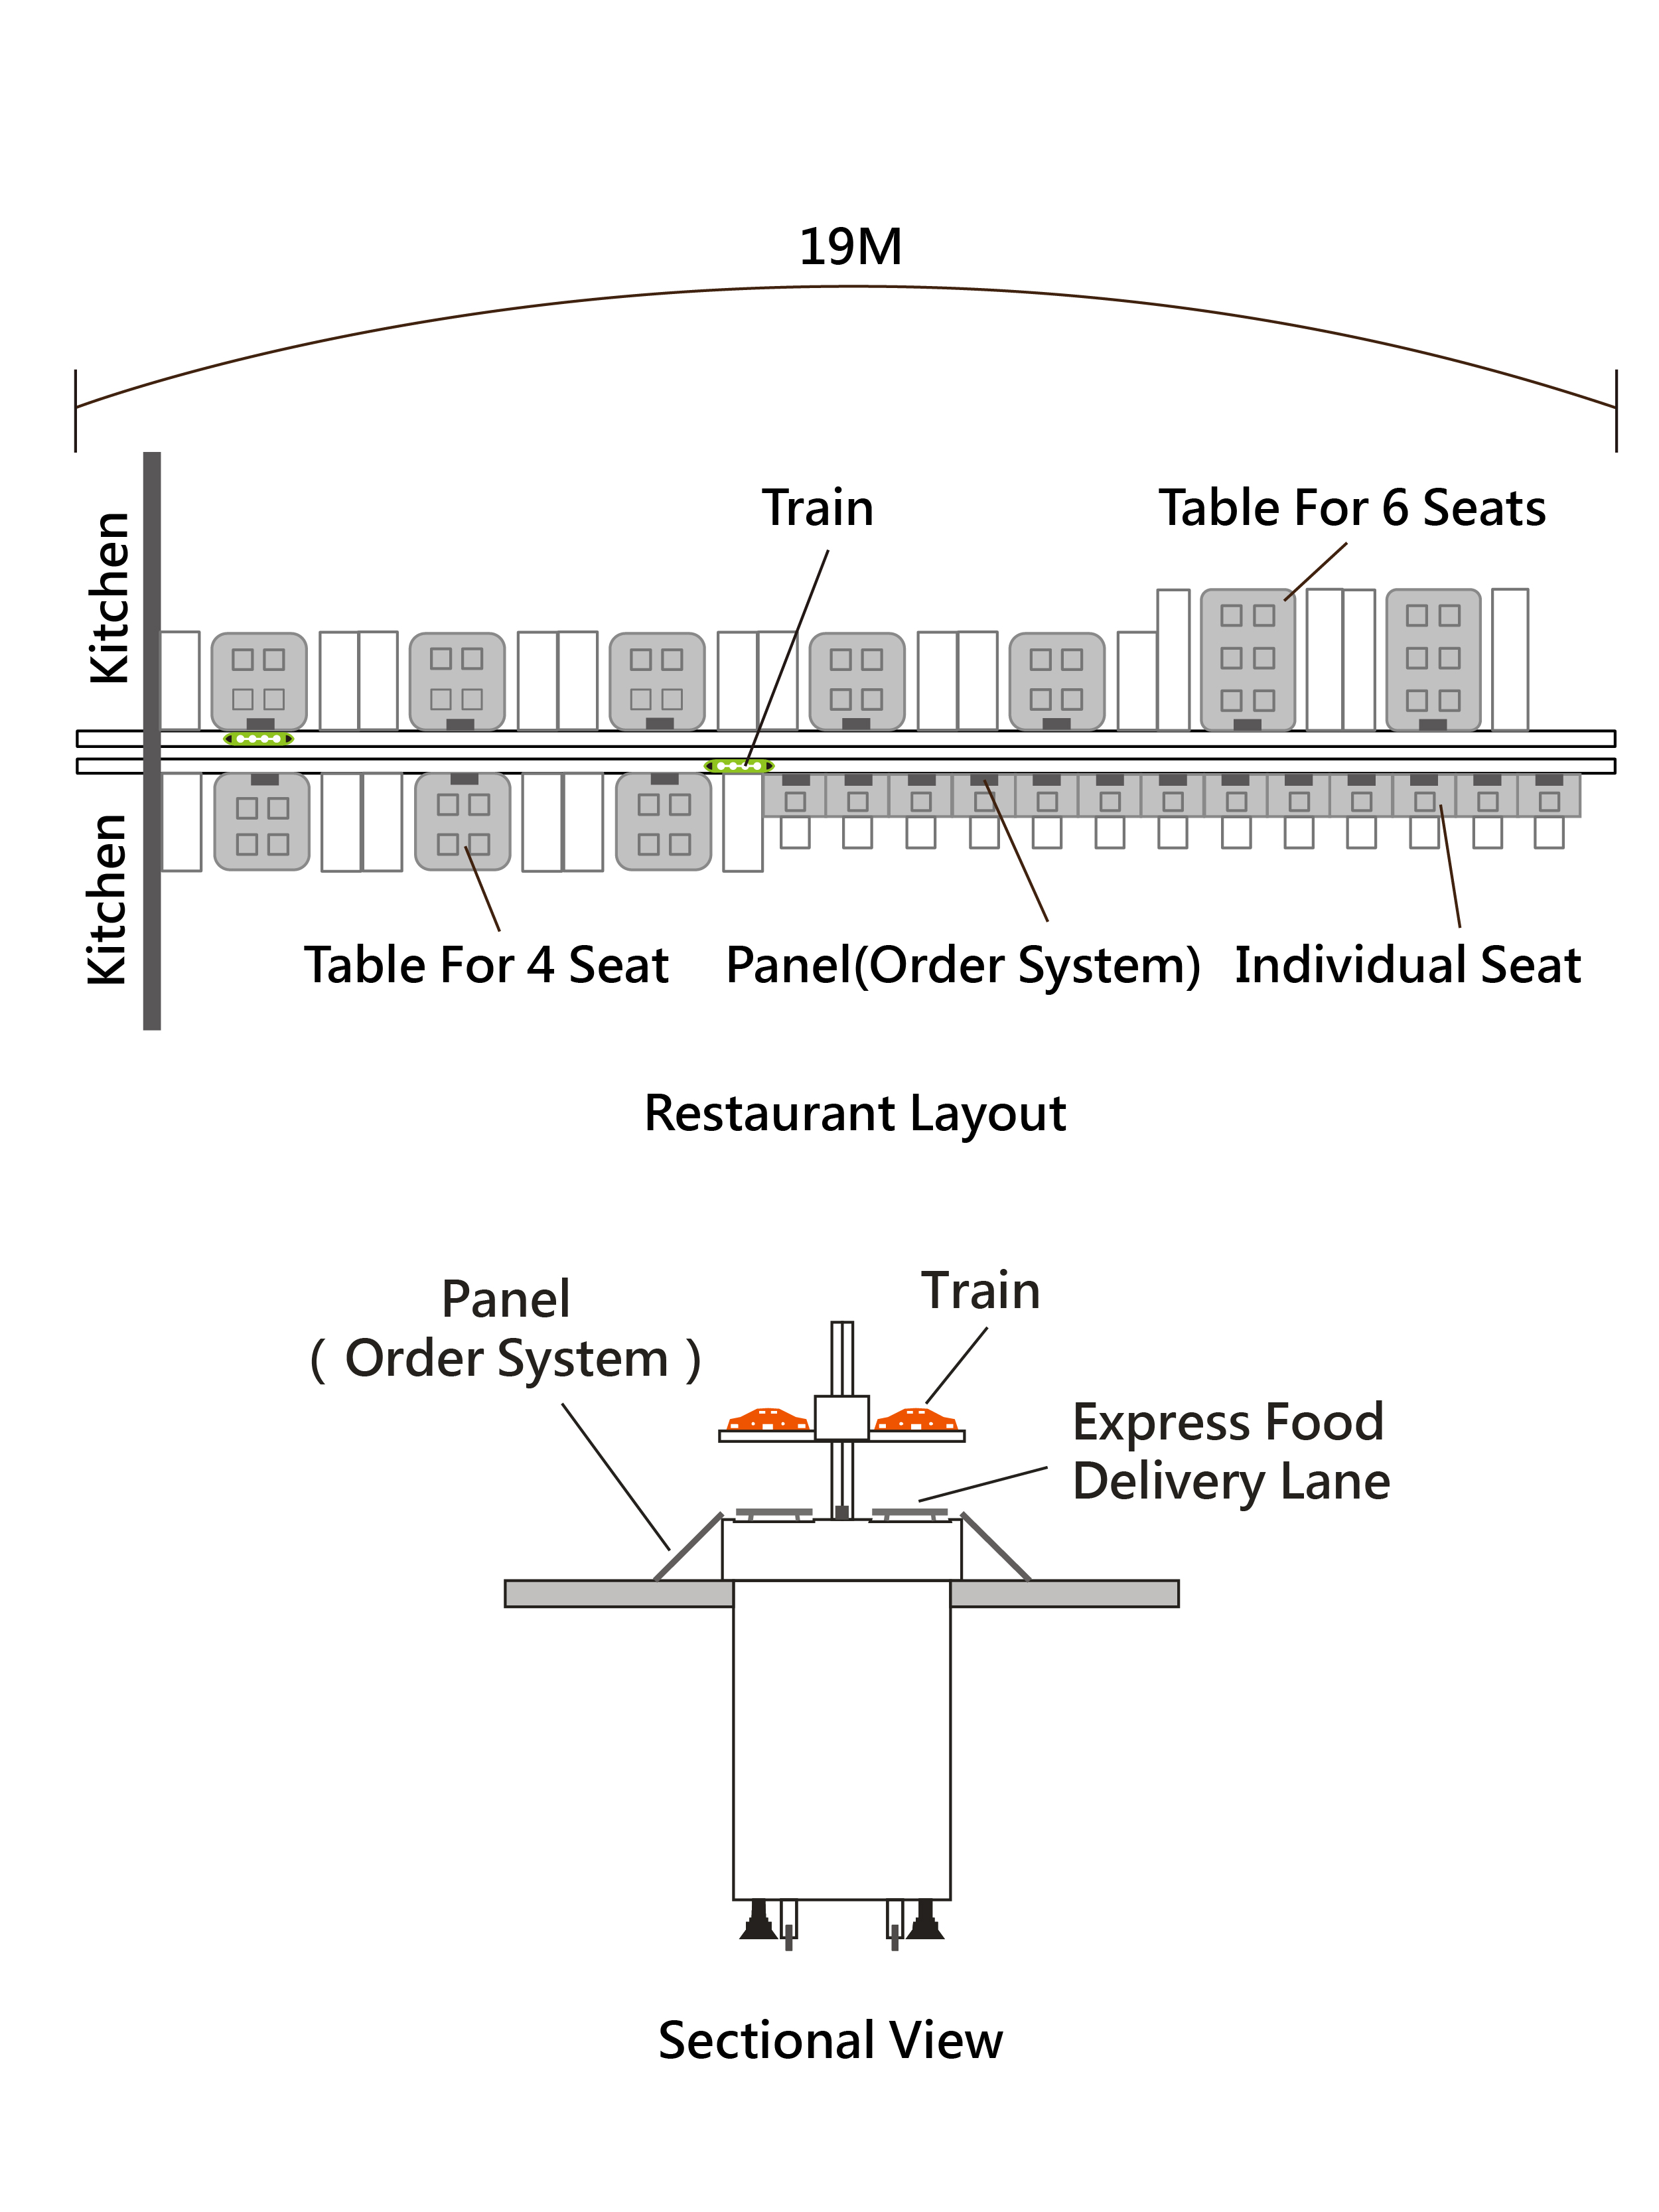 Restaurant layout